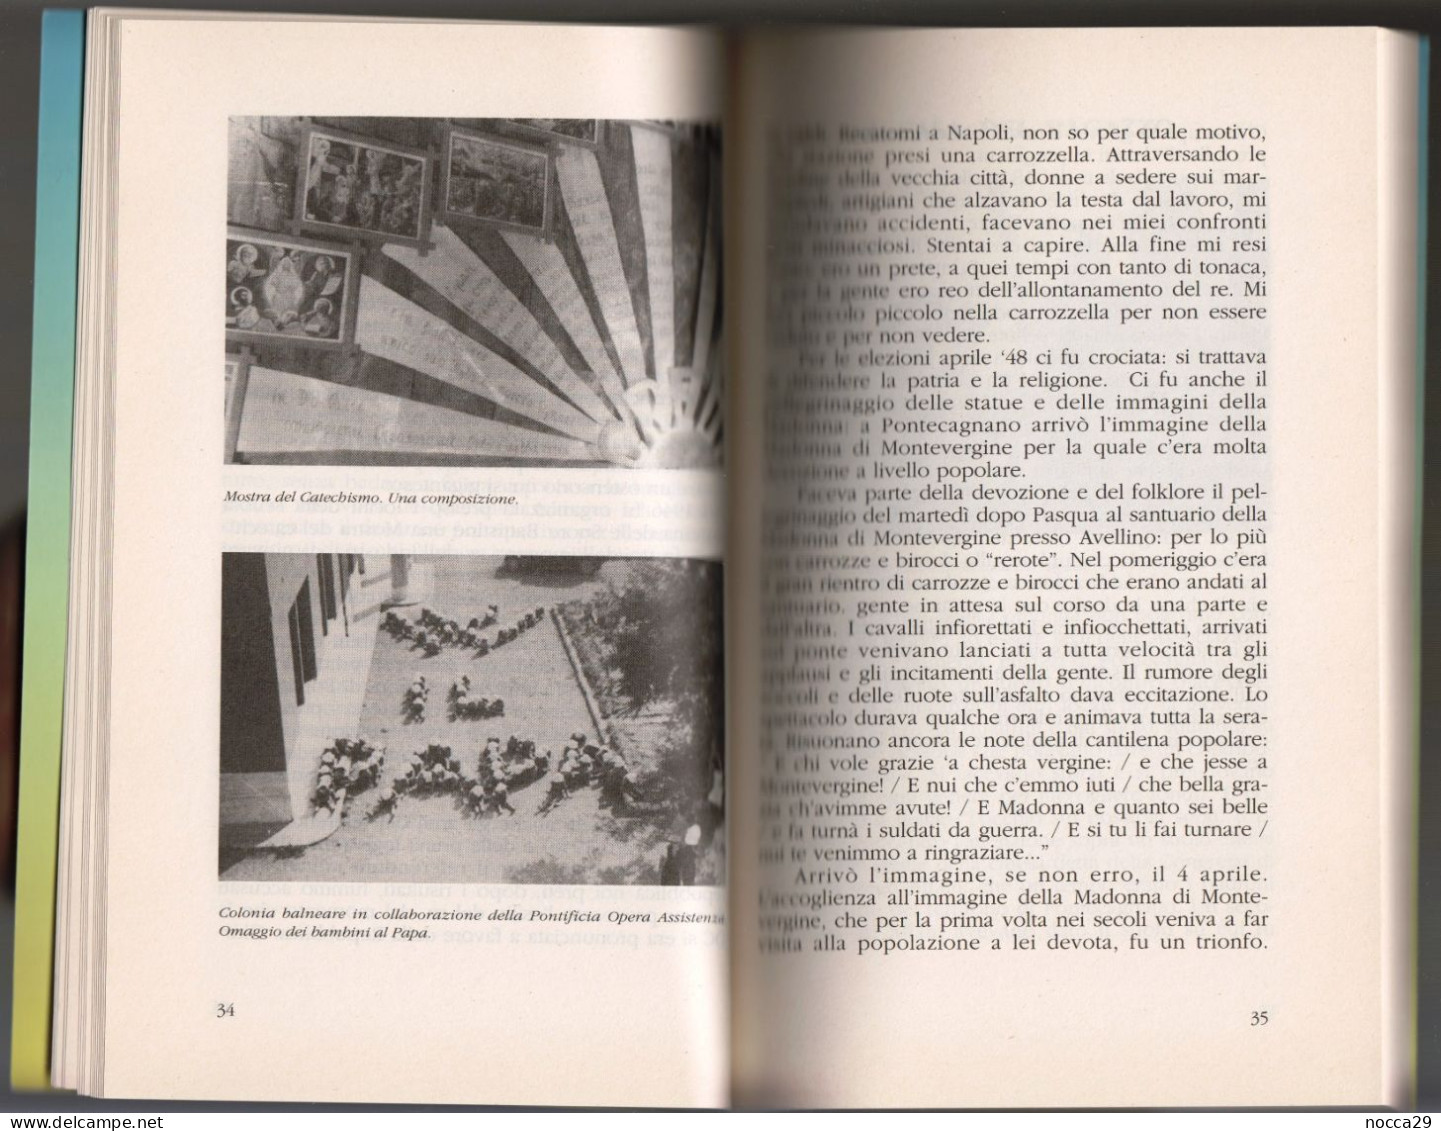 CINQUANTANNI INSIEME PONTECAGNANO 1942 1992 - BEL LIBRO DI STORIA LOCALE - AUTORE: PADRE EMILIO D'ANGELO (STAMP274H)